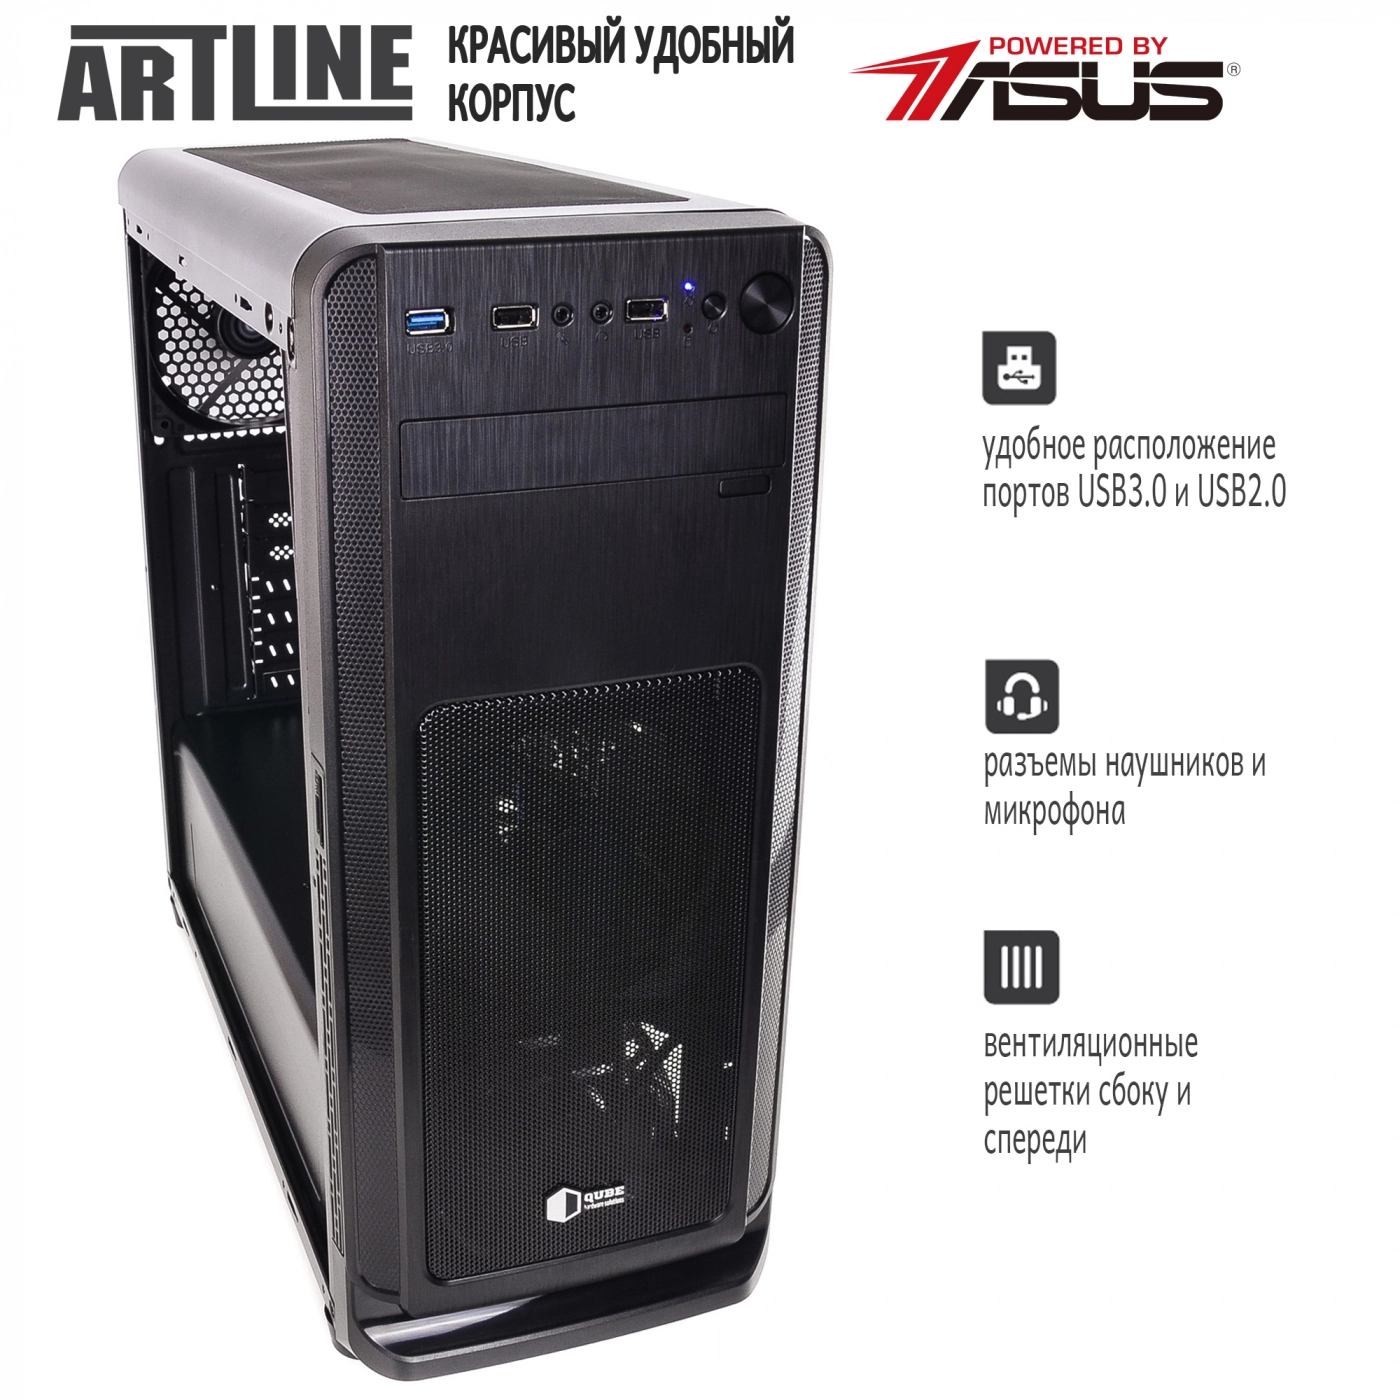 Купить Сервер ARTLINE Business T17v10 - фото 8